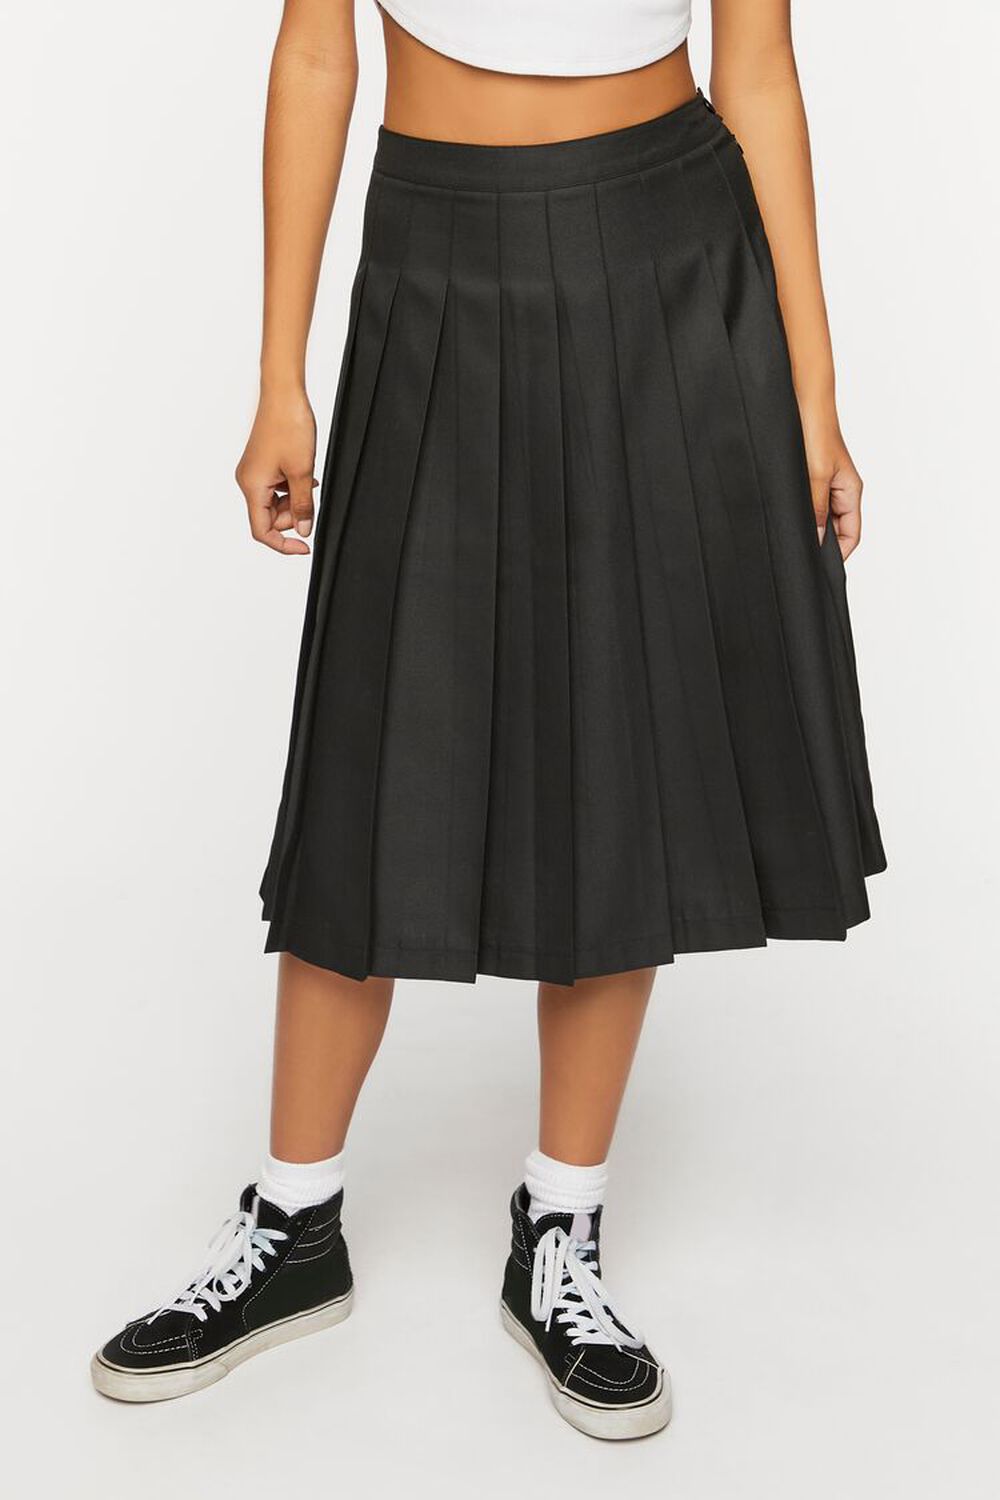 BLACK Pleated A-Line Midi Skirt, image 2